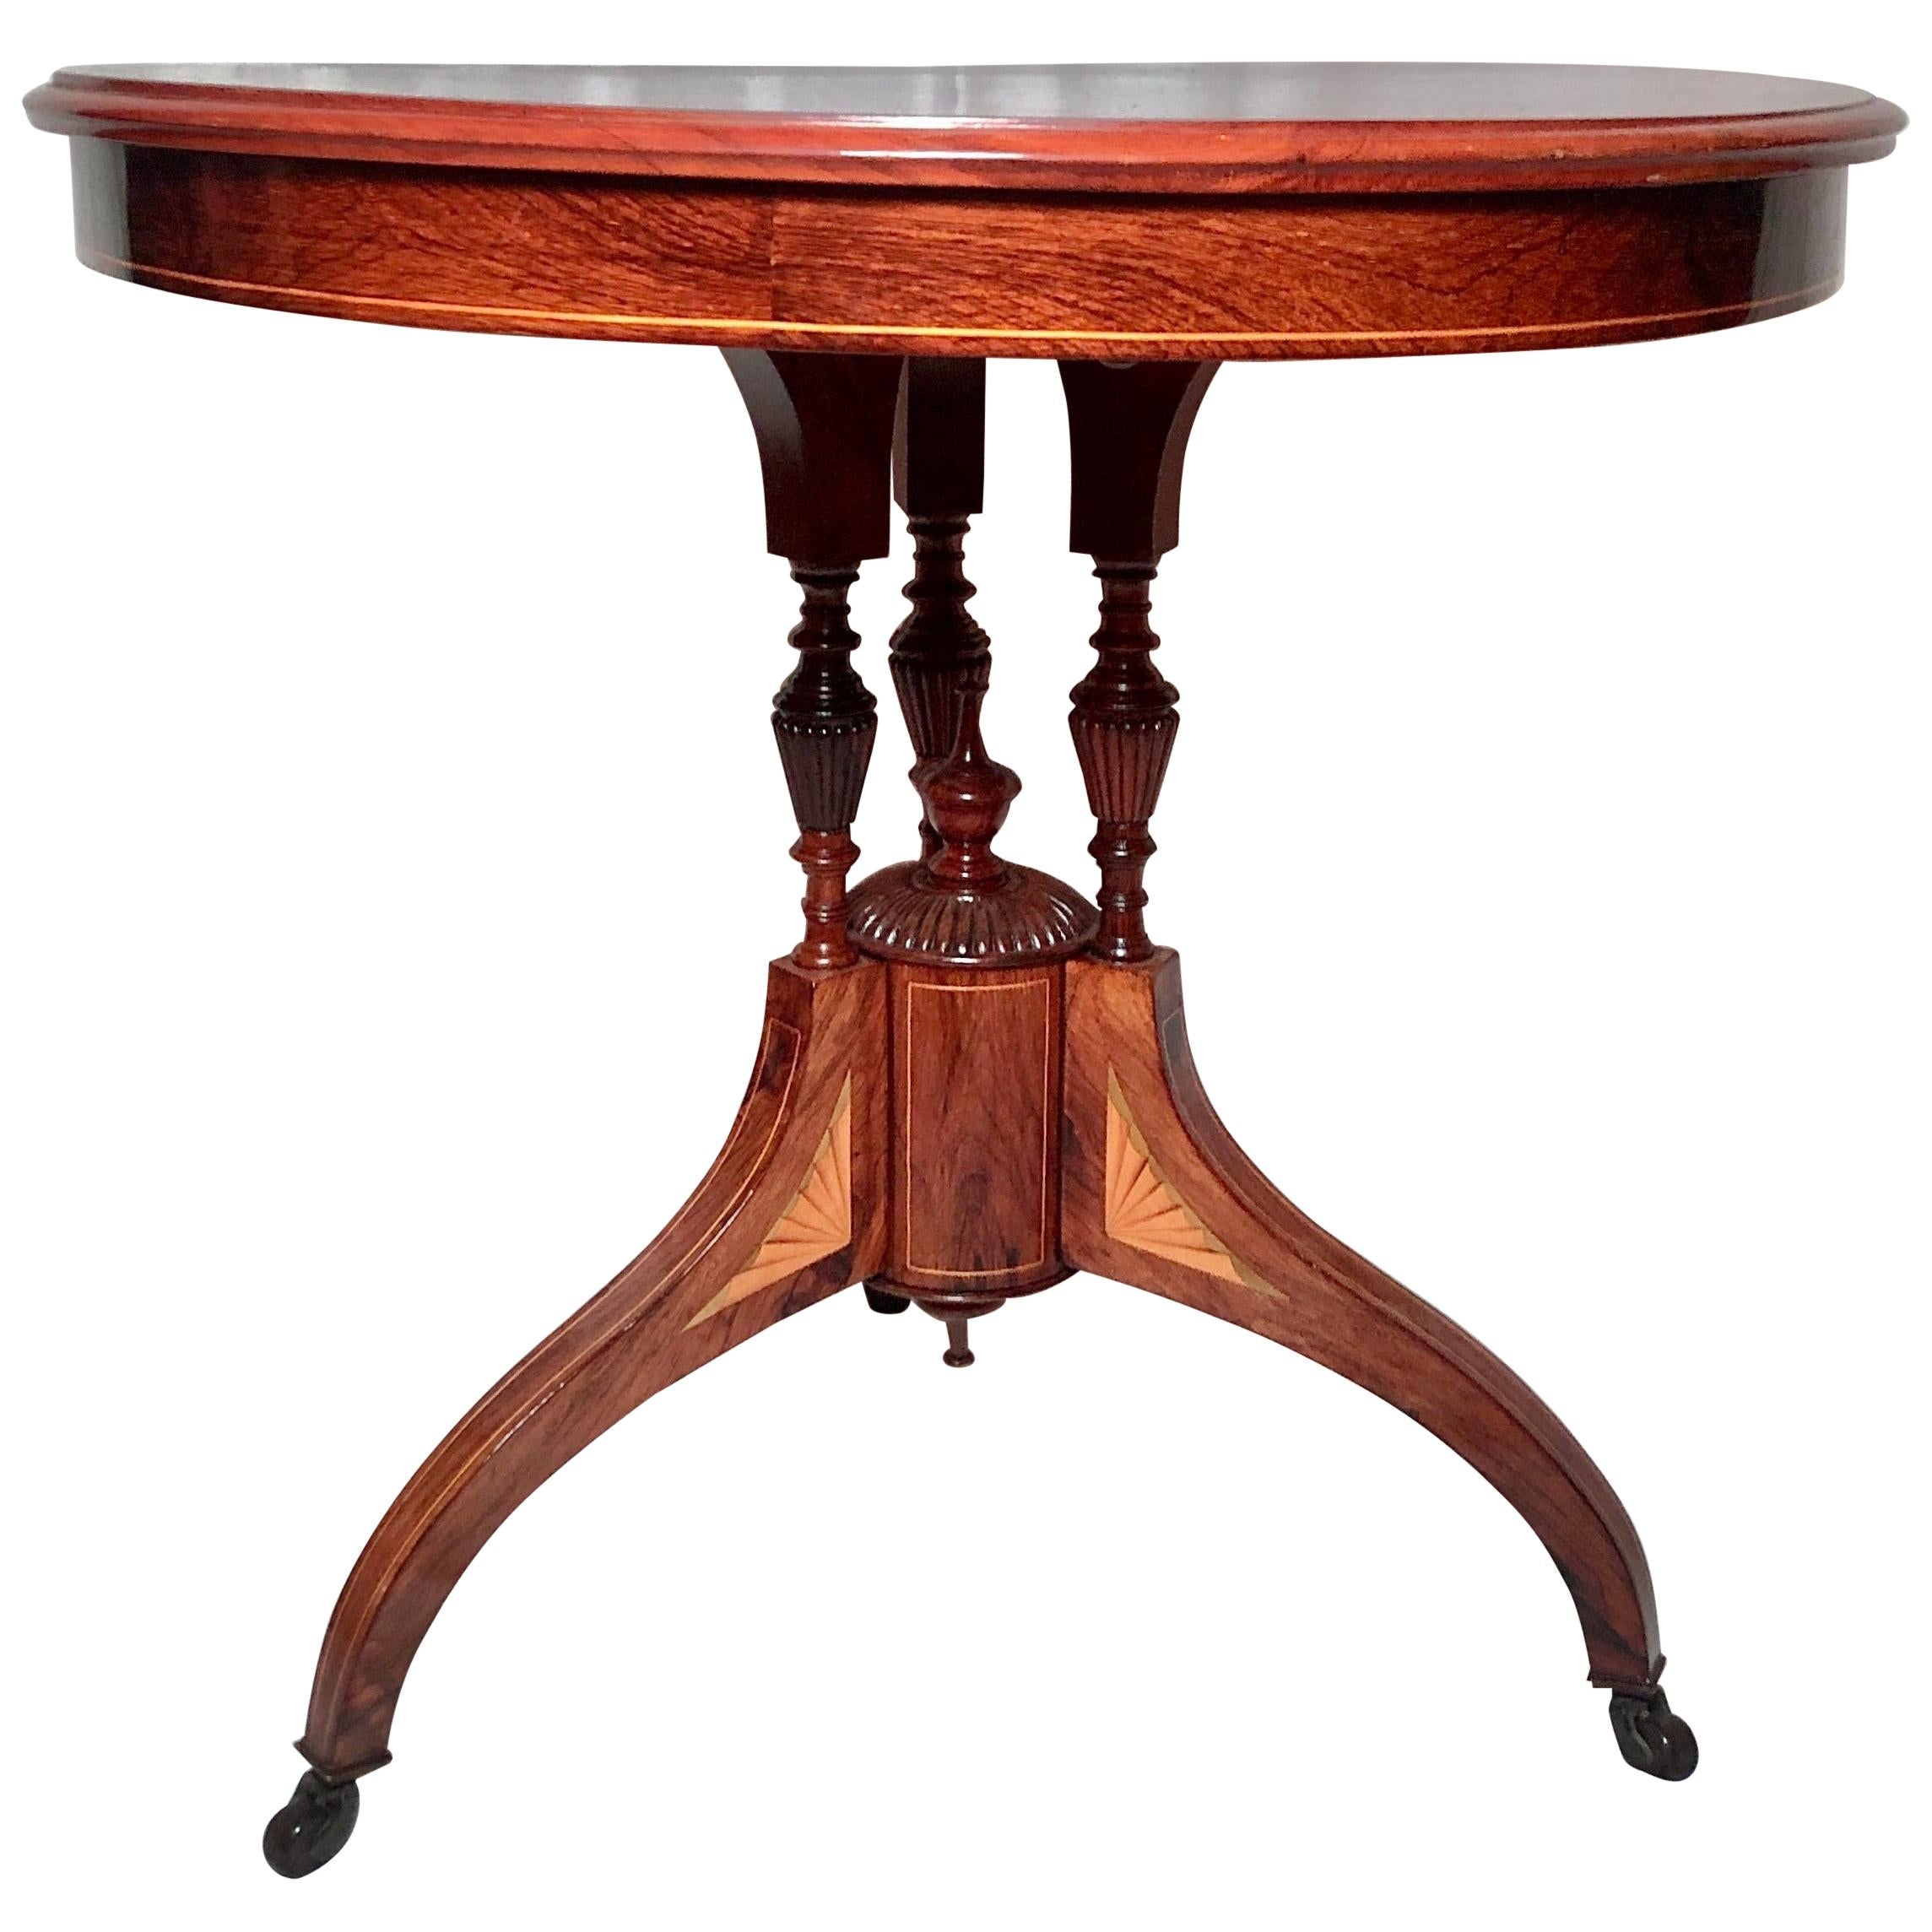 Ancienne table victorienne anglaise en bois de rose avec incrustation, vers 1860- 1870